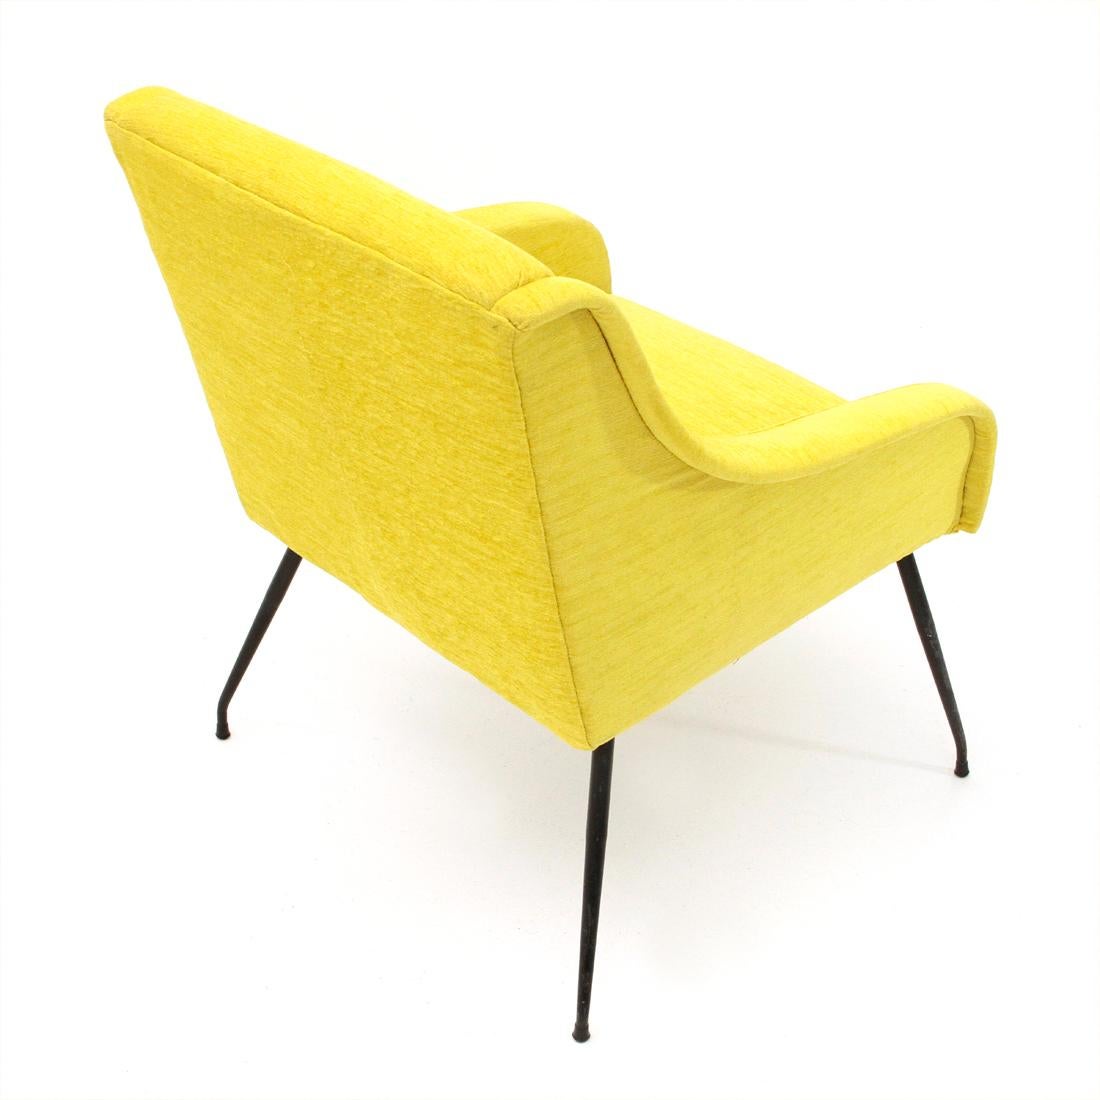 Mid-20th Century Midcentury Italian Yellow Velvet Armchair, 1960s